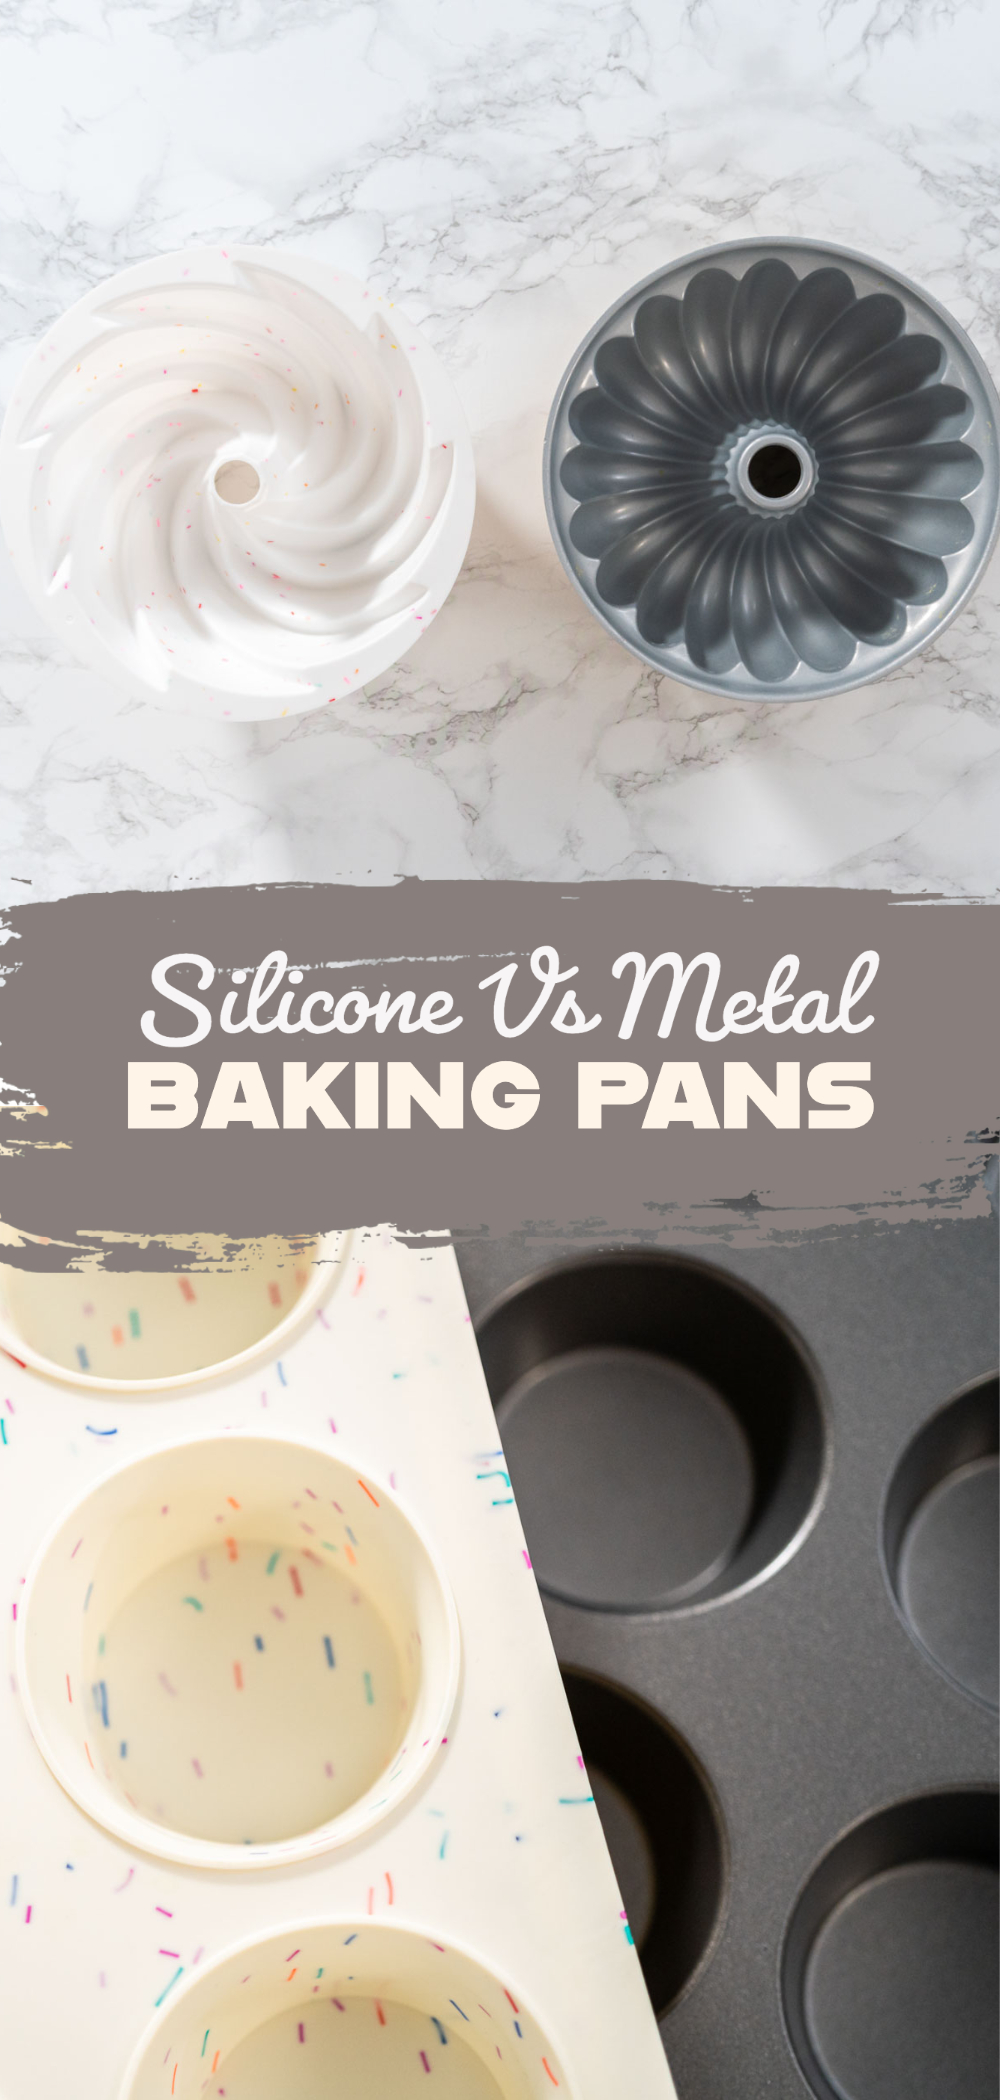 Silicone vs metal baking pans